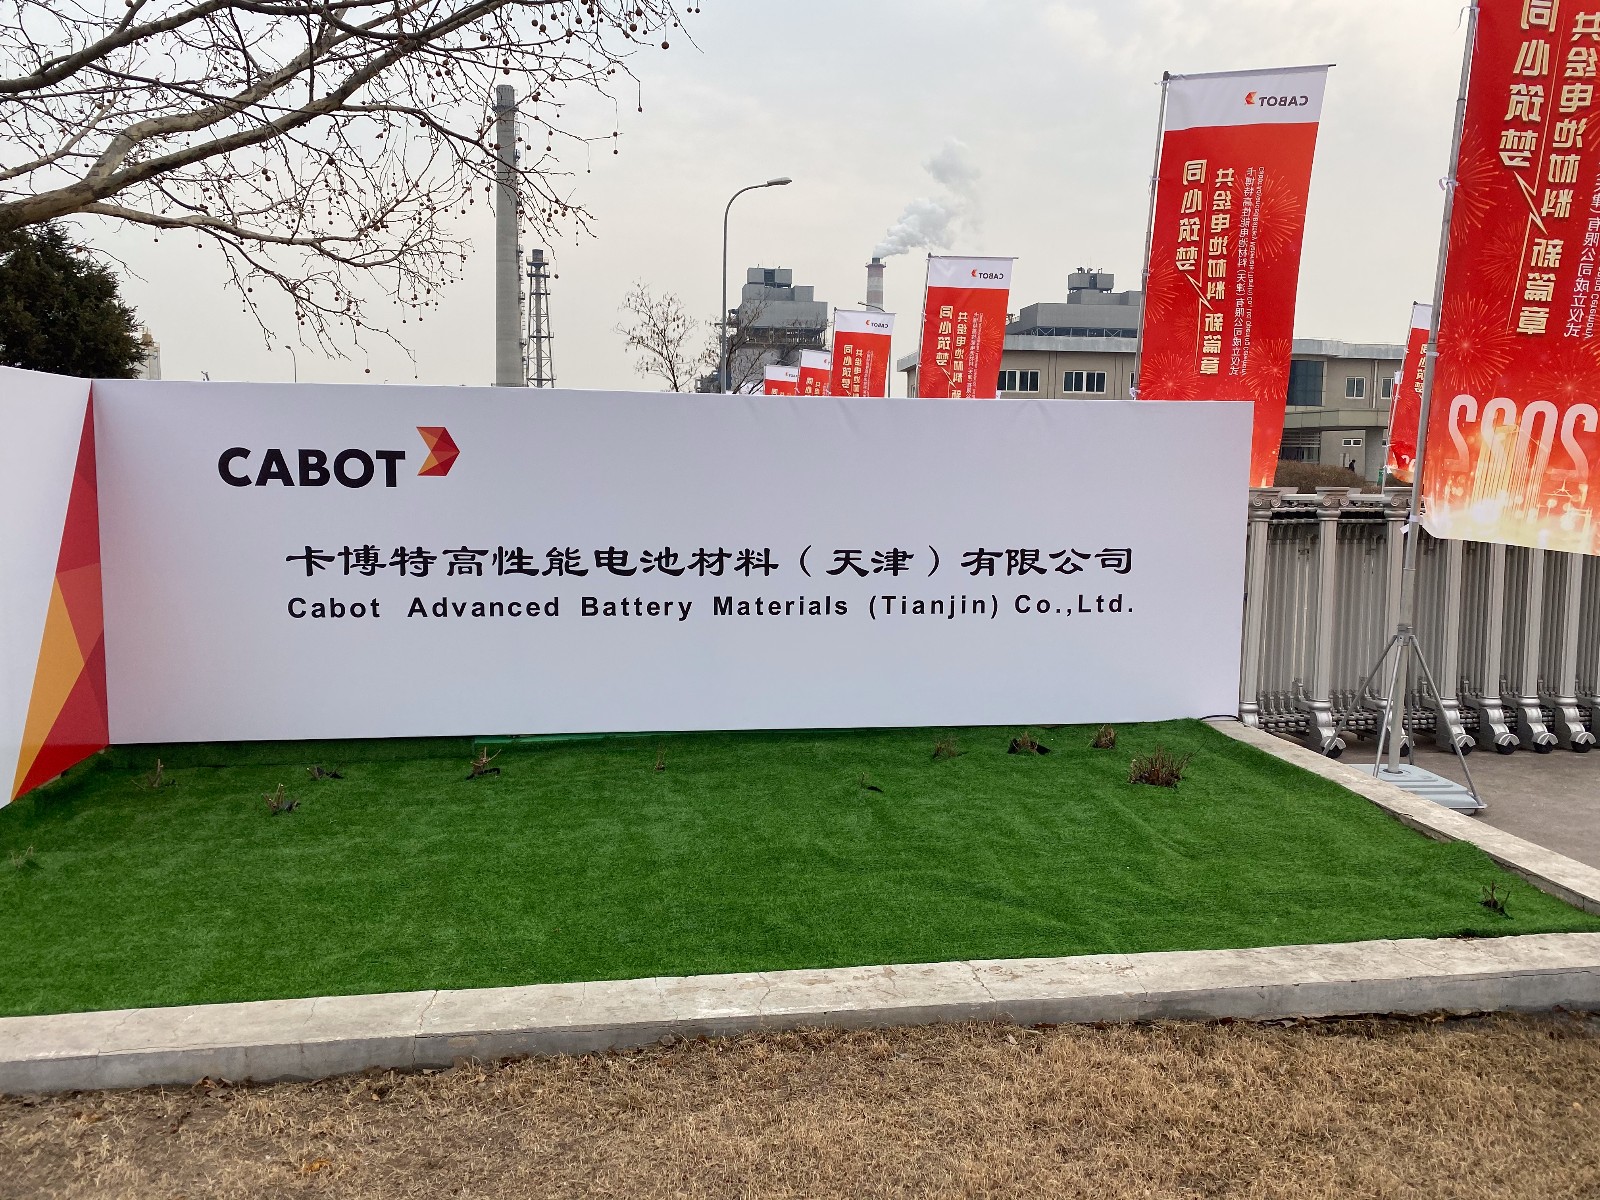 卡博特公司宣布收购位于中国的东海炭素（天津）有限公司炭黑工厂